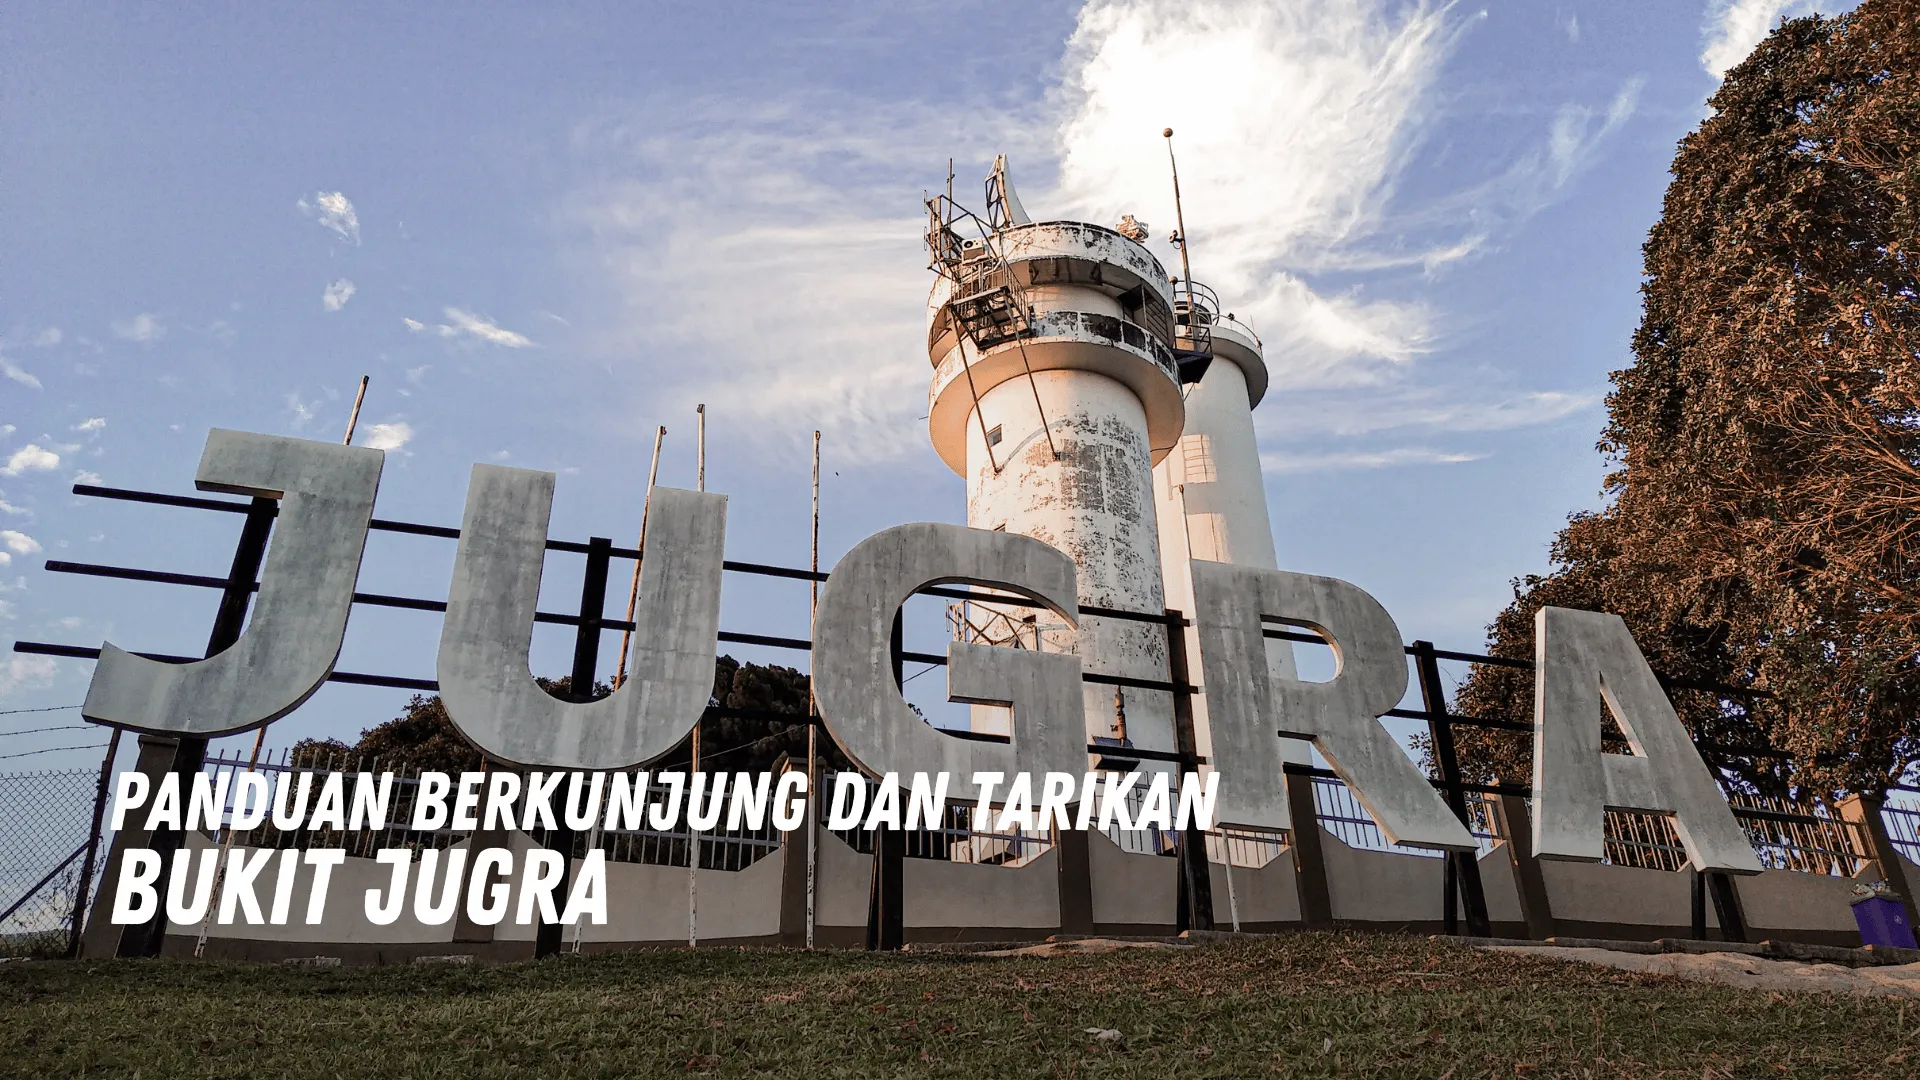 Review Bukit Jugra Malaysia